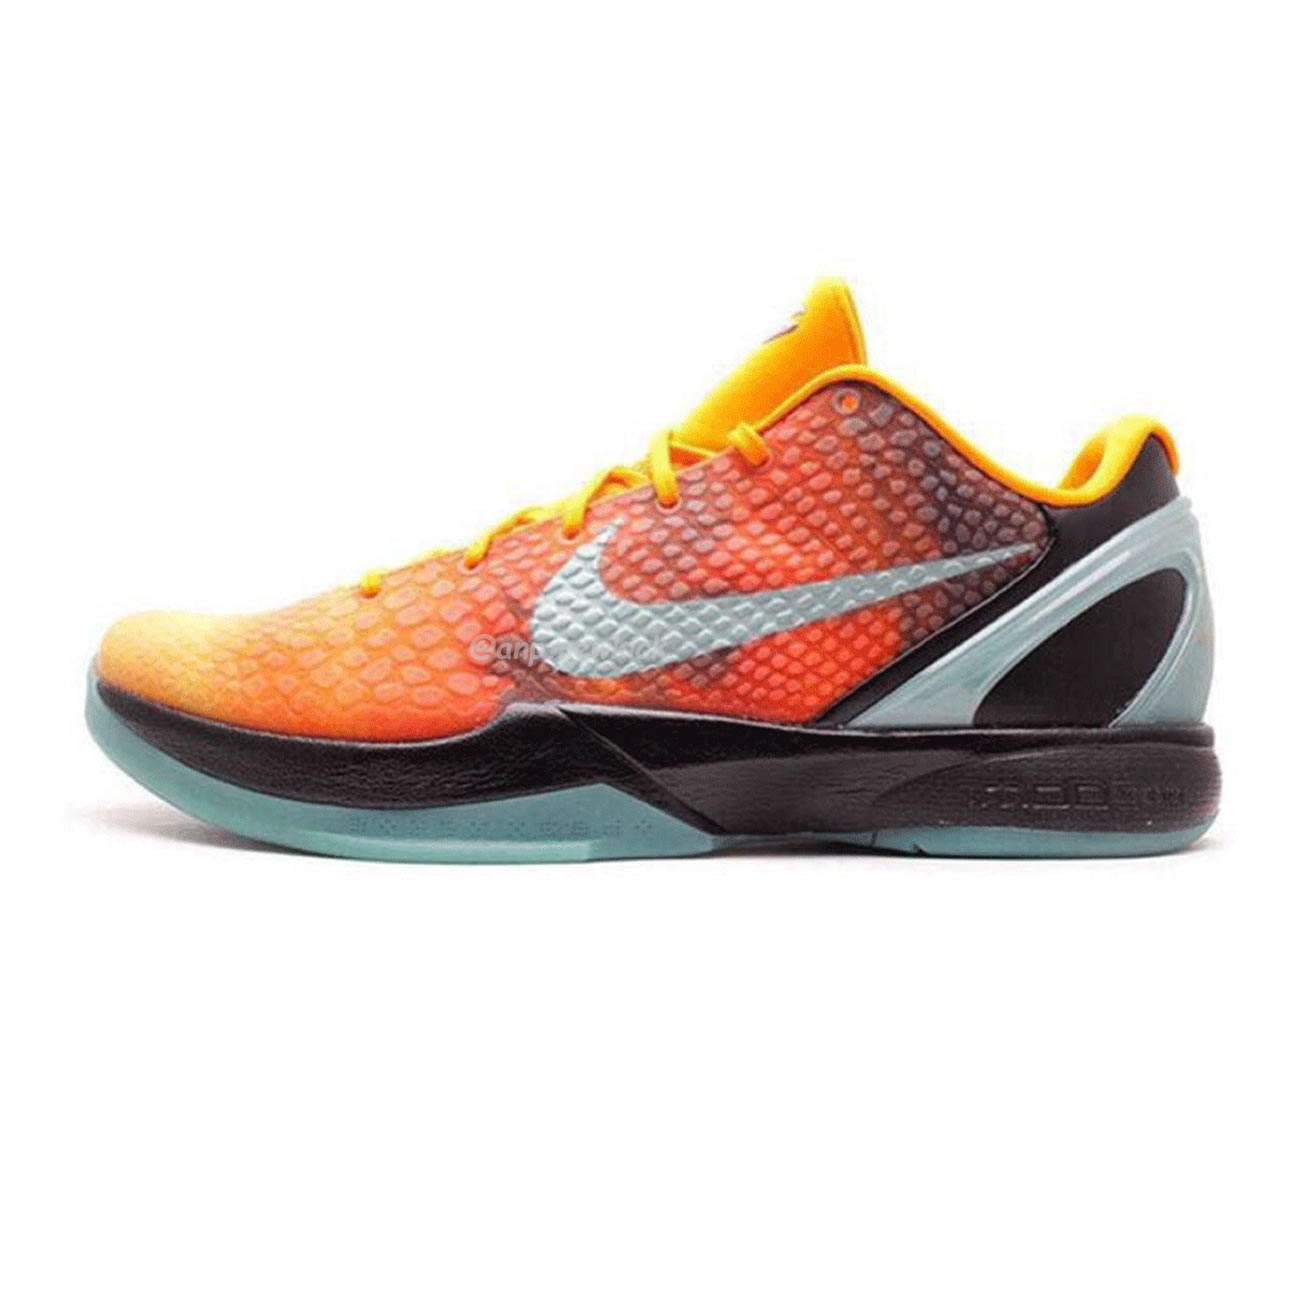 Nike Kobe 6 Orange County Cw2190 800 (1) - newkick.org